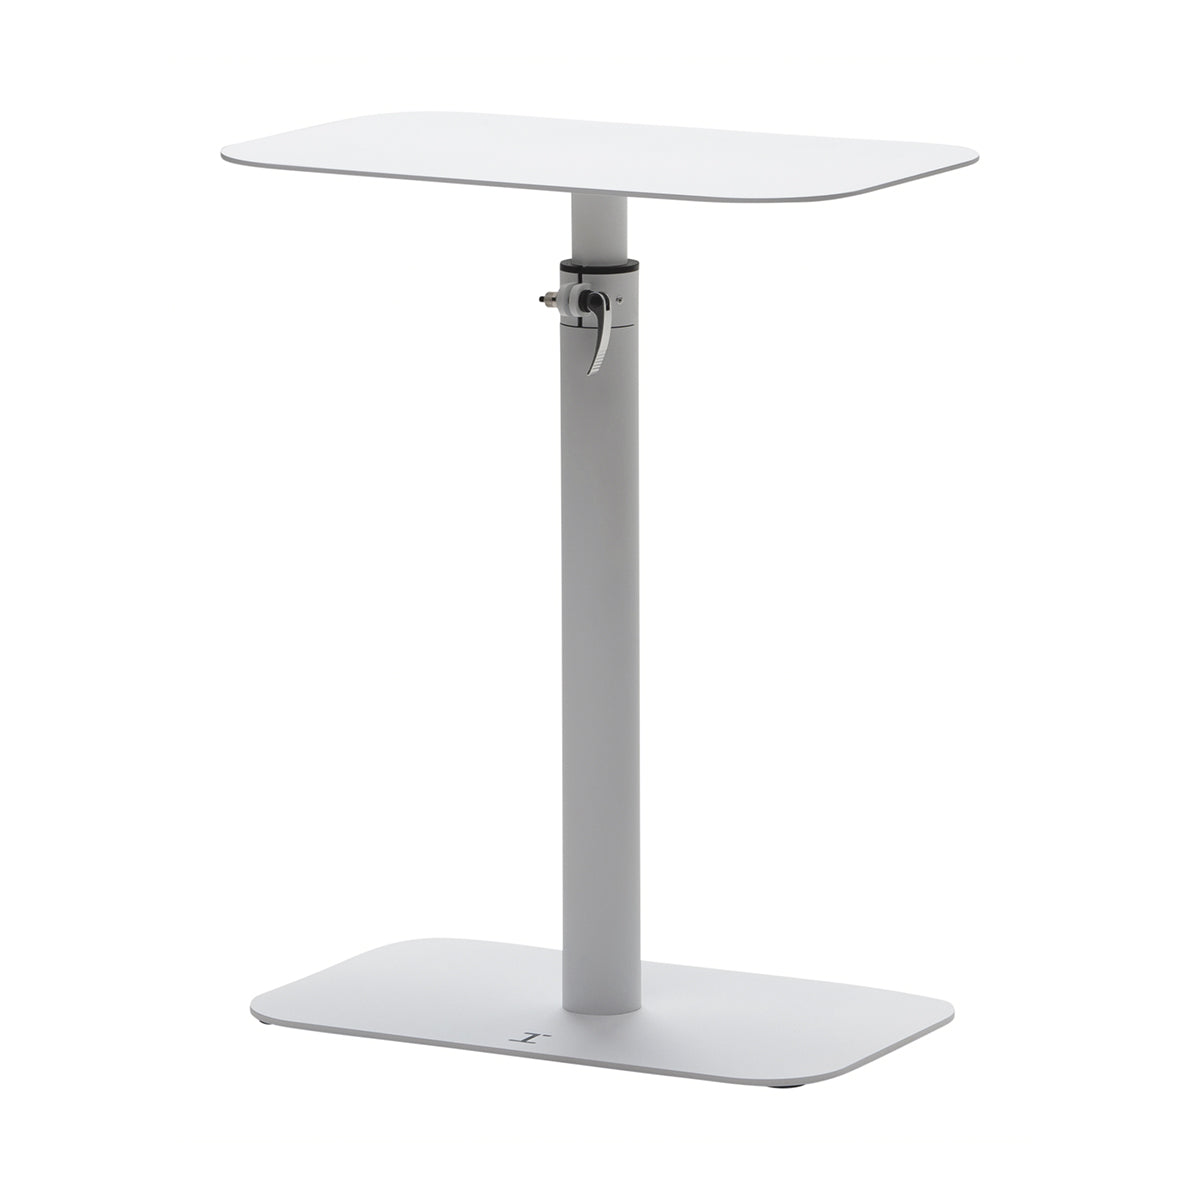 BW Active table  Pöytä 56x35cm High, säädettävä 